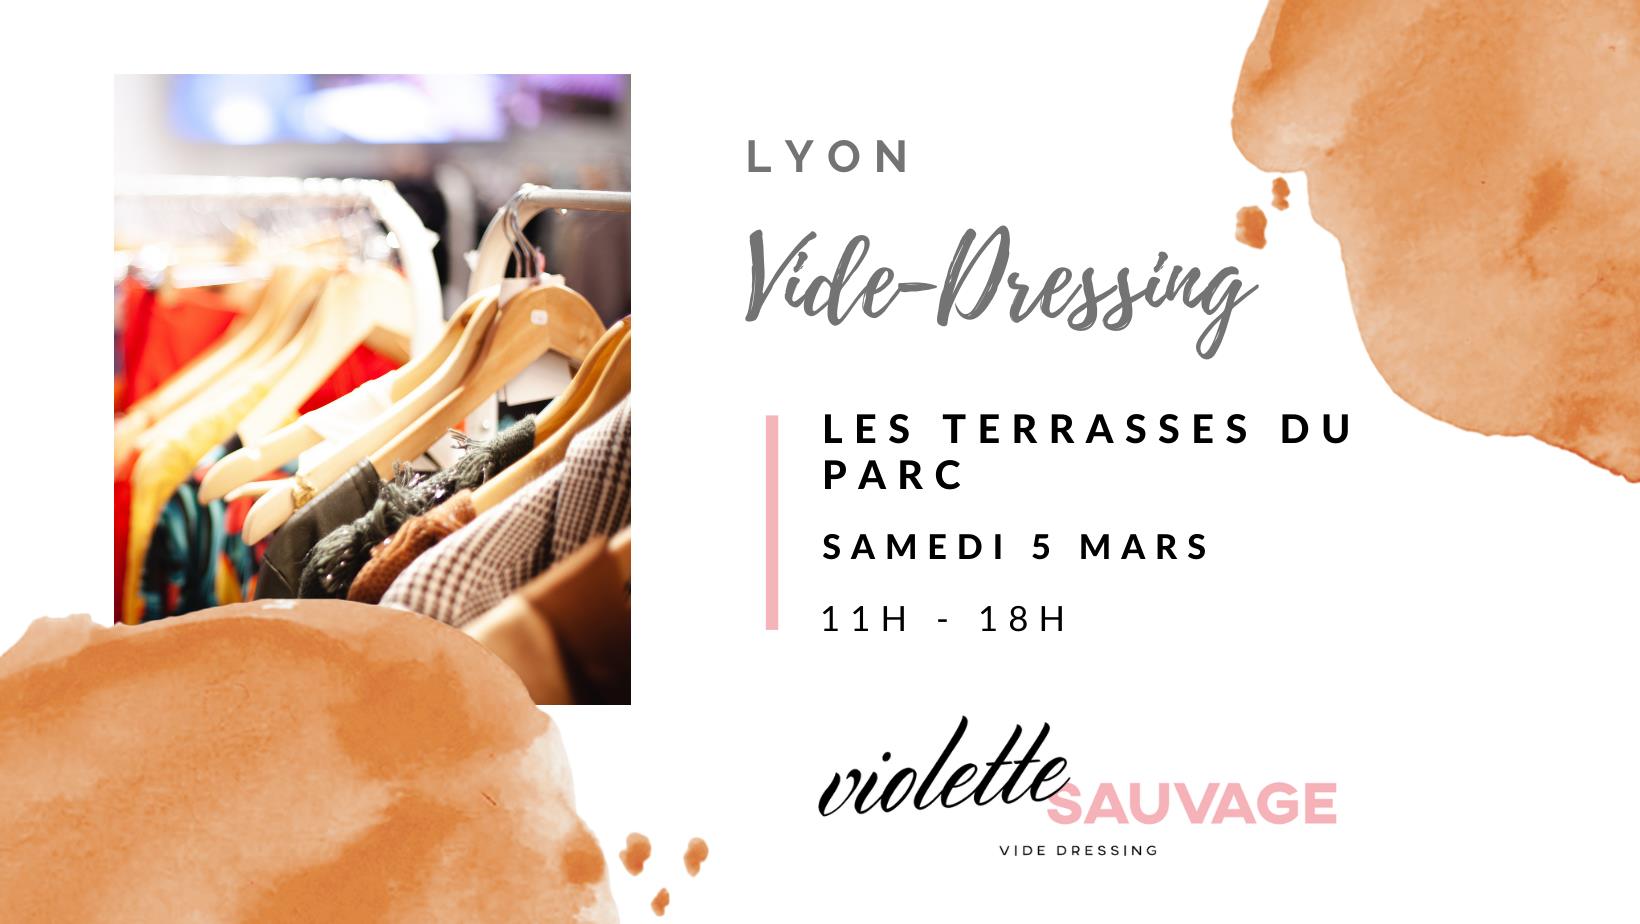 Violette Sauvage, le plus grand vide-dressing de France samedi 5 mars aux Terrasses du Parc de Lyon